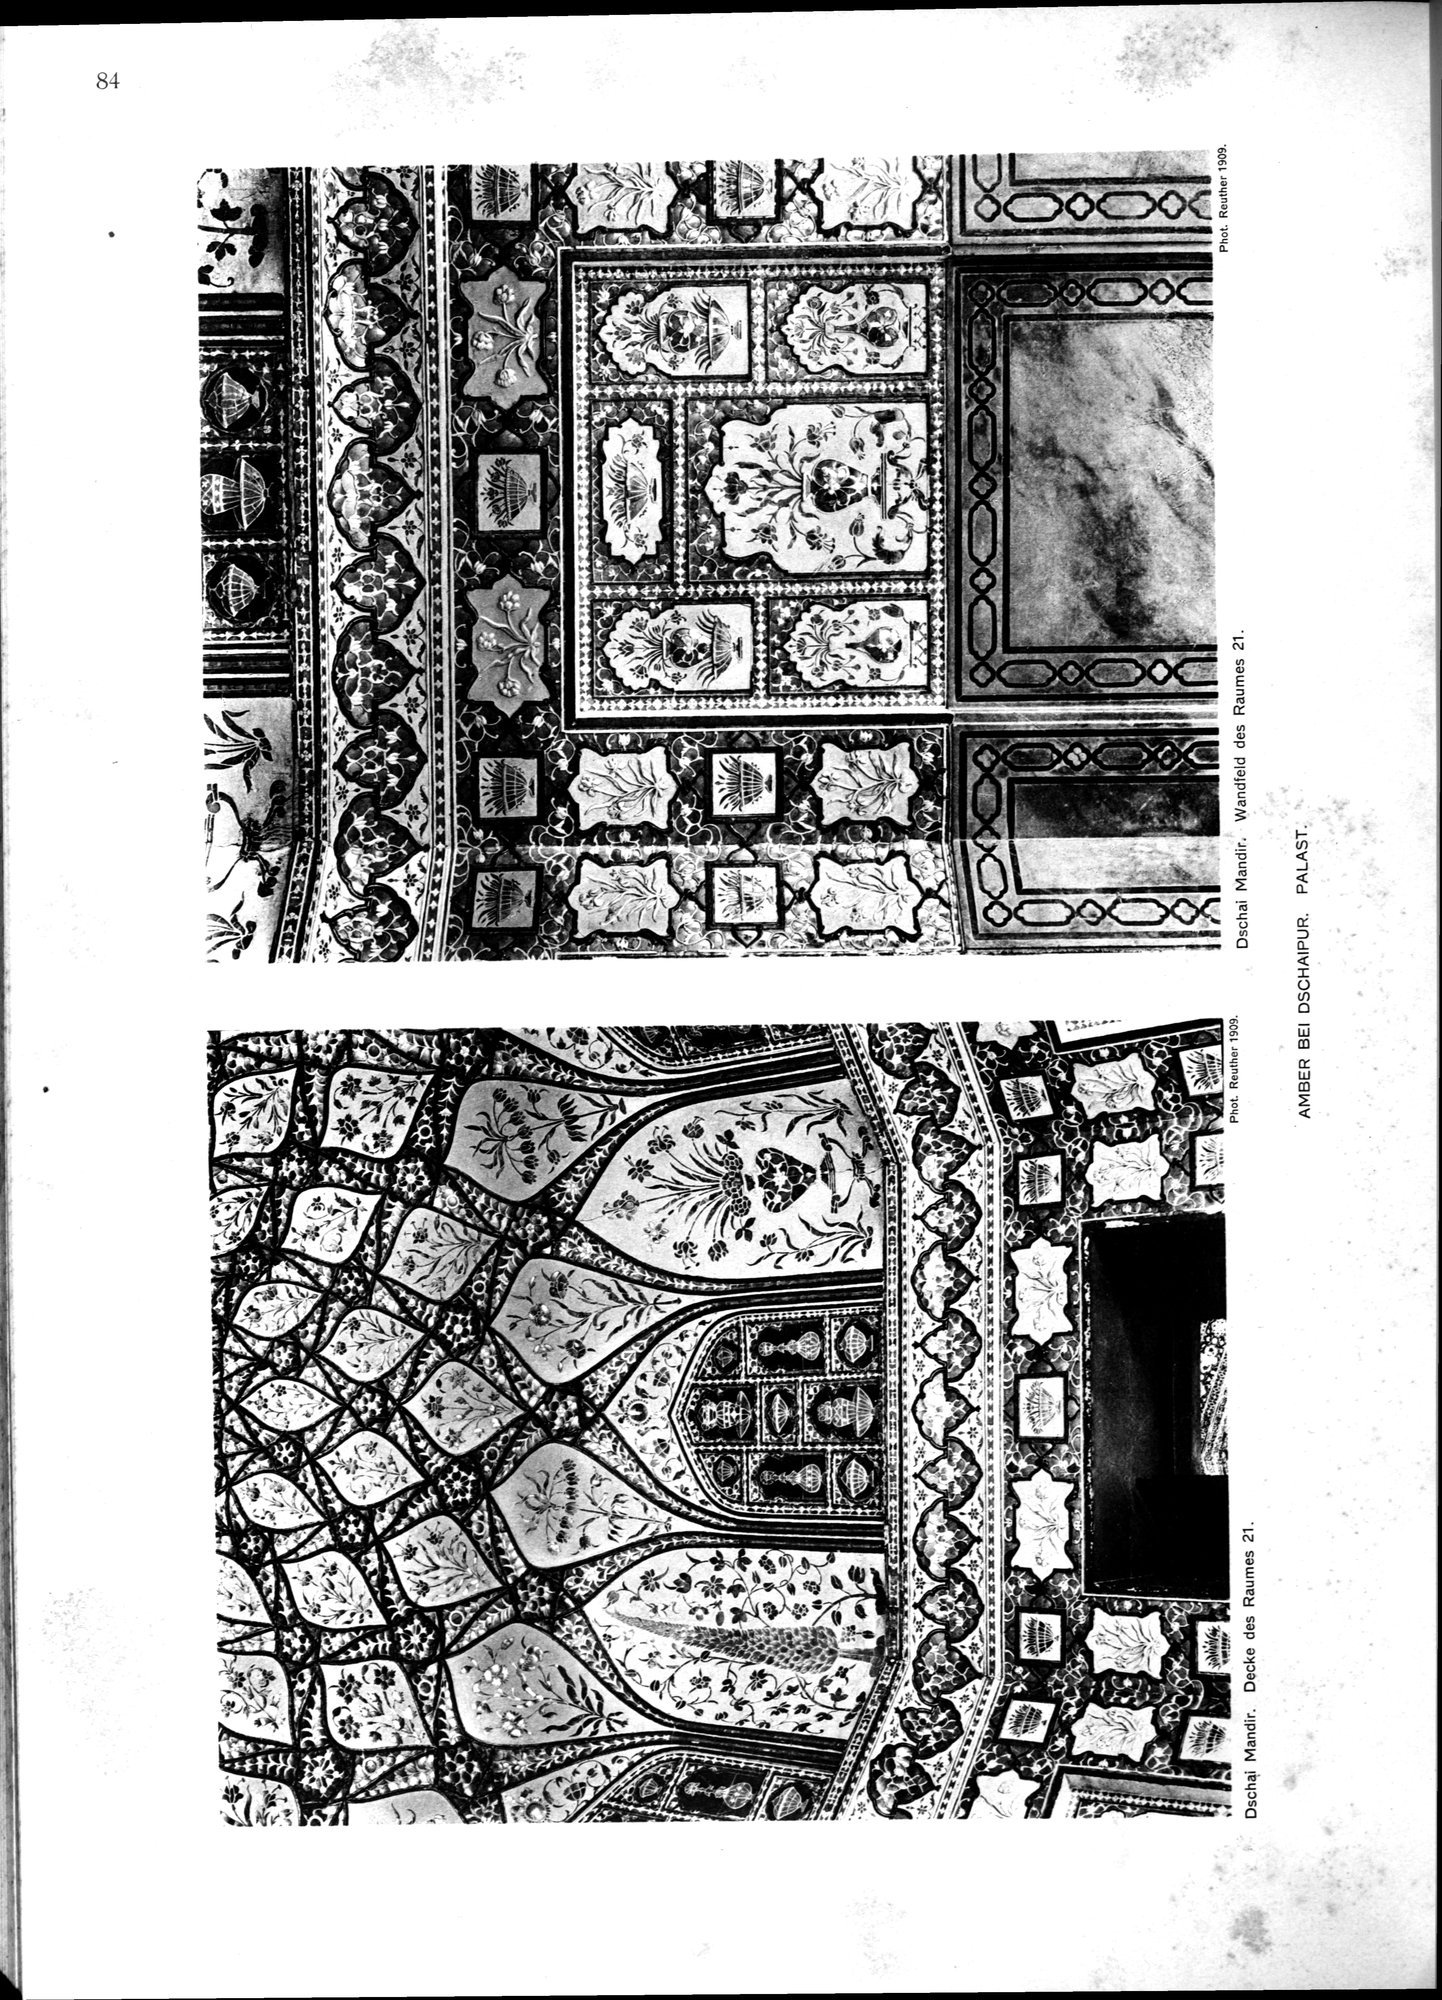 Indische Palaste und Wohnhauser : vol.1 / Page 200 (Grayscale High Resolution Image)